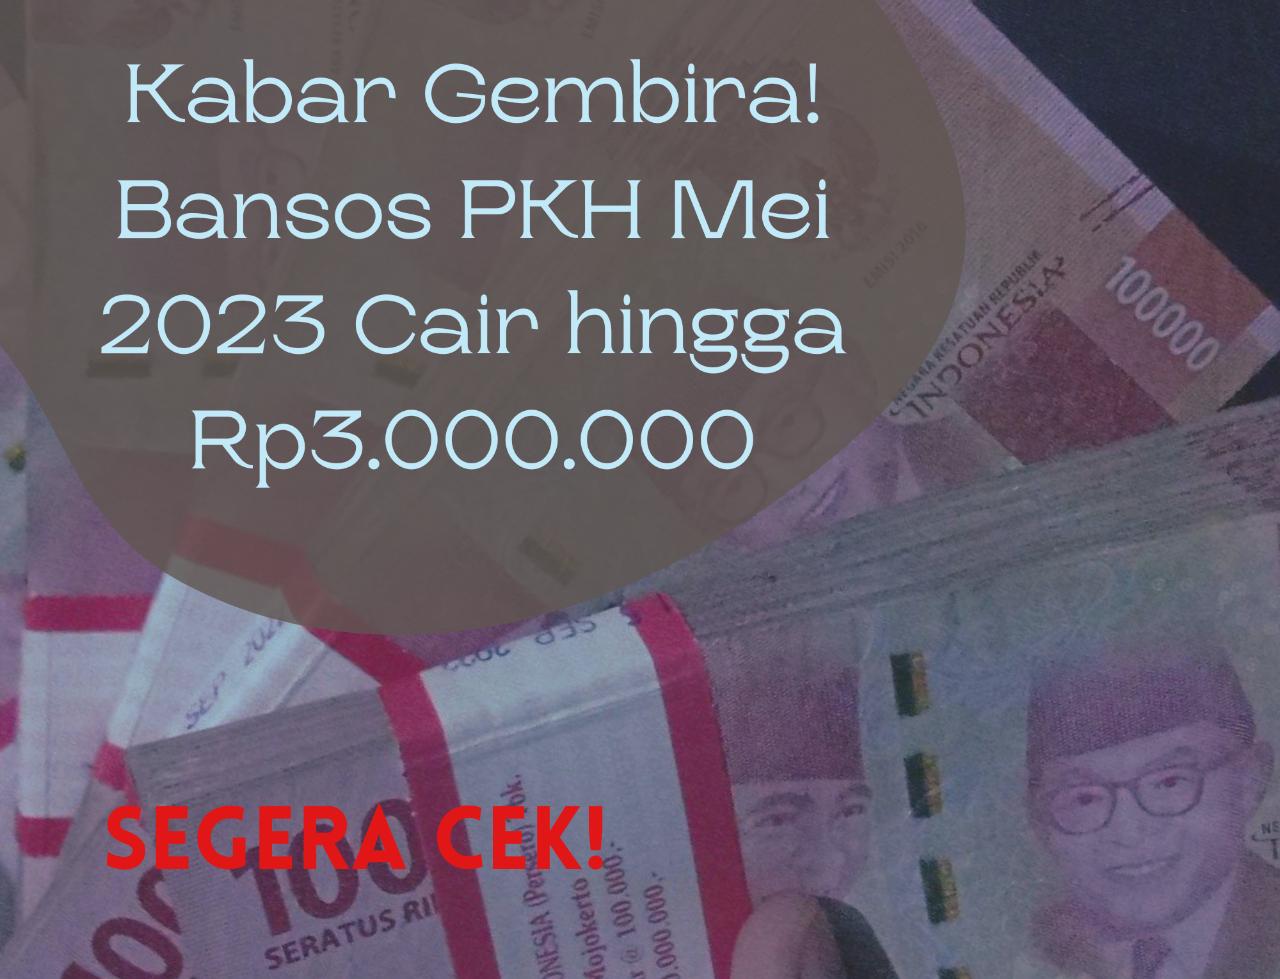 Kabar Gembira! Bansos PKH Mei 2023 Cair hingga Rp3.000.000, Bagi KPM Terdaftar di DTKS Kemensos